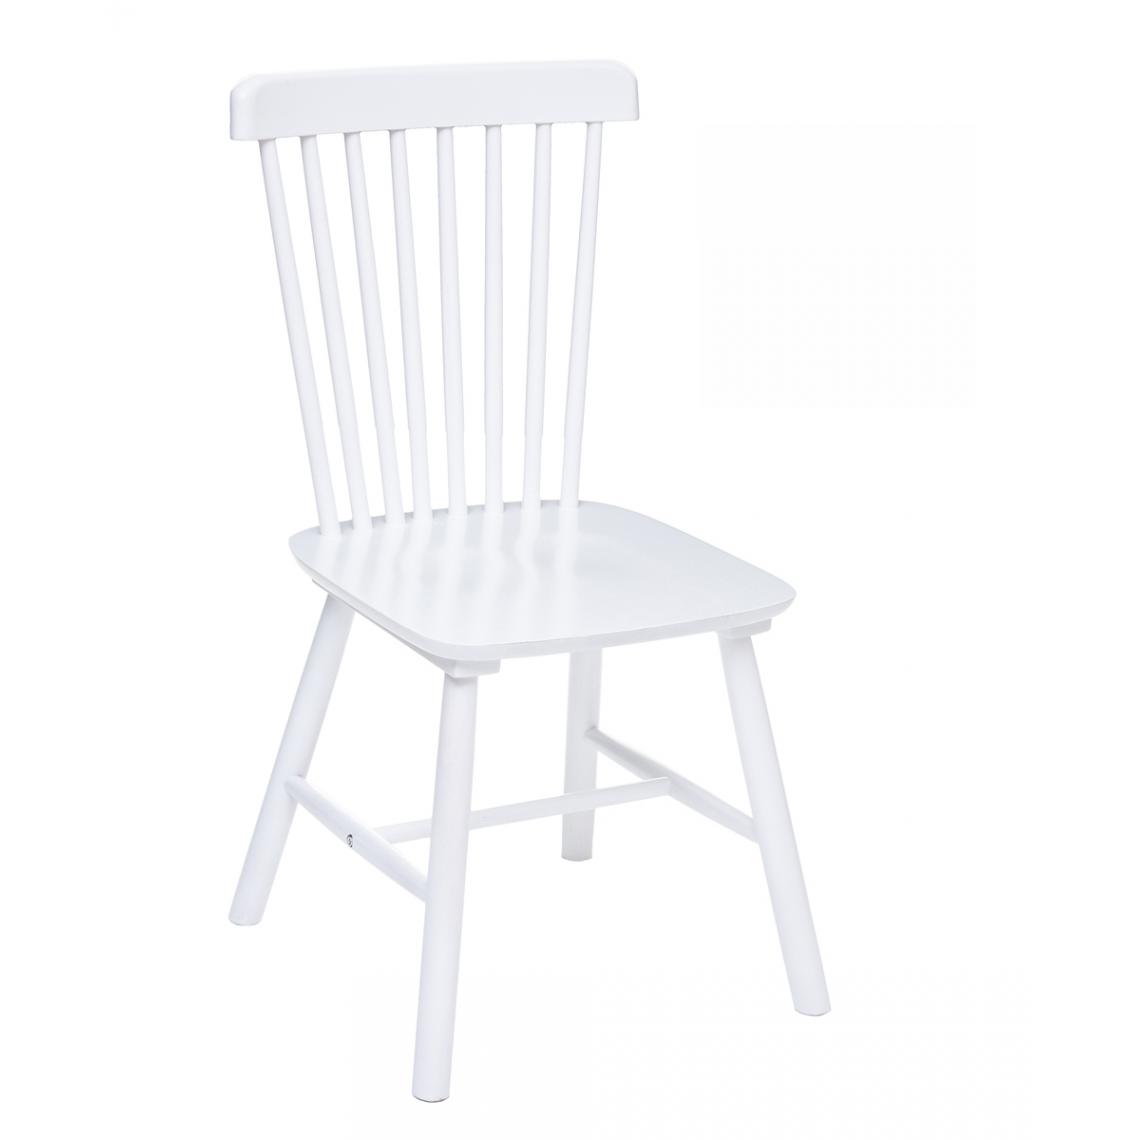 Pegane - Lot de 2 chaises en bois coloris blanc - Longueur 90 x Profondeur 102 x Hauteur 72 cm - Chaises